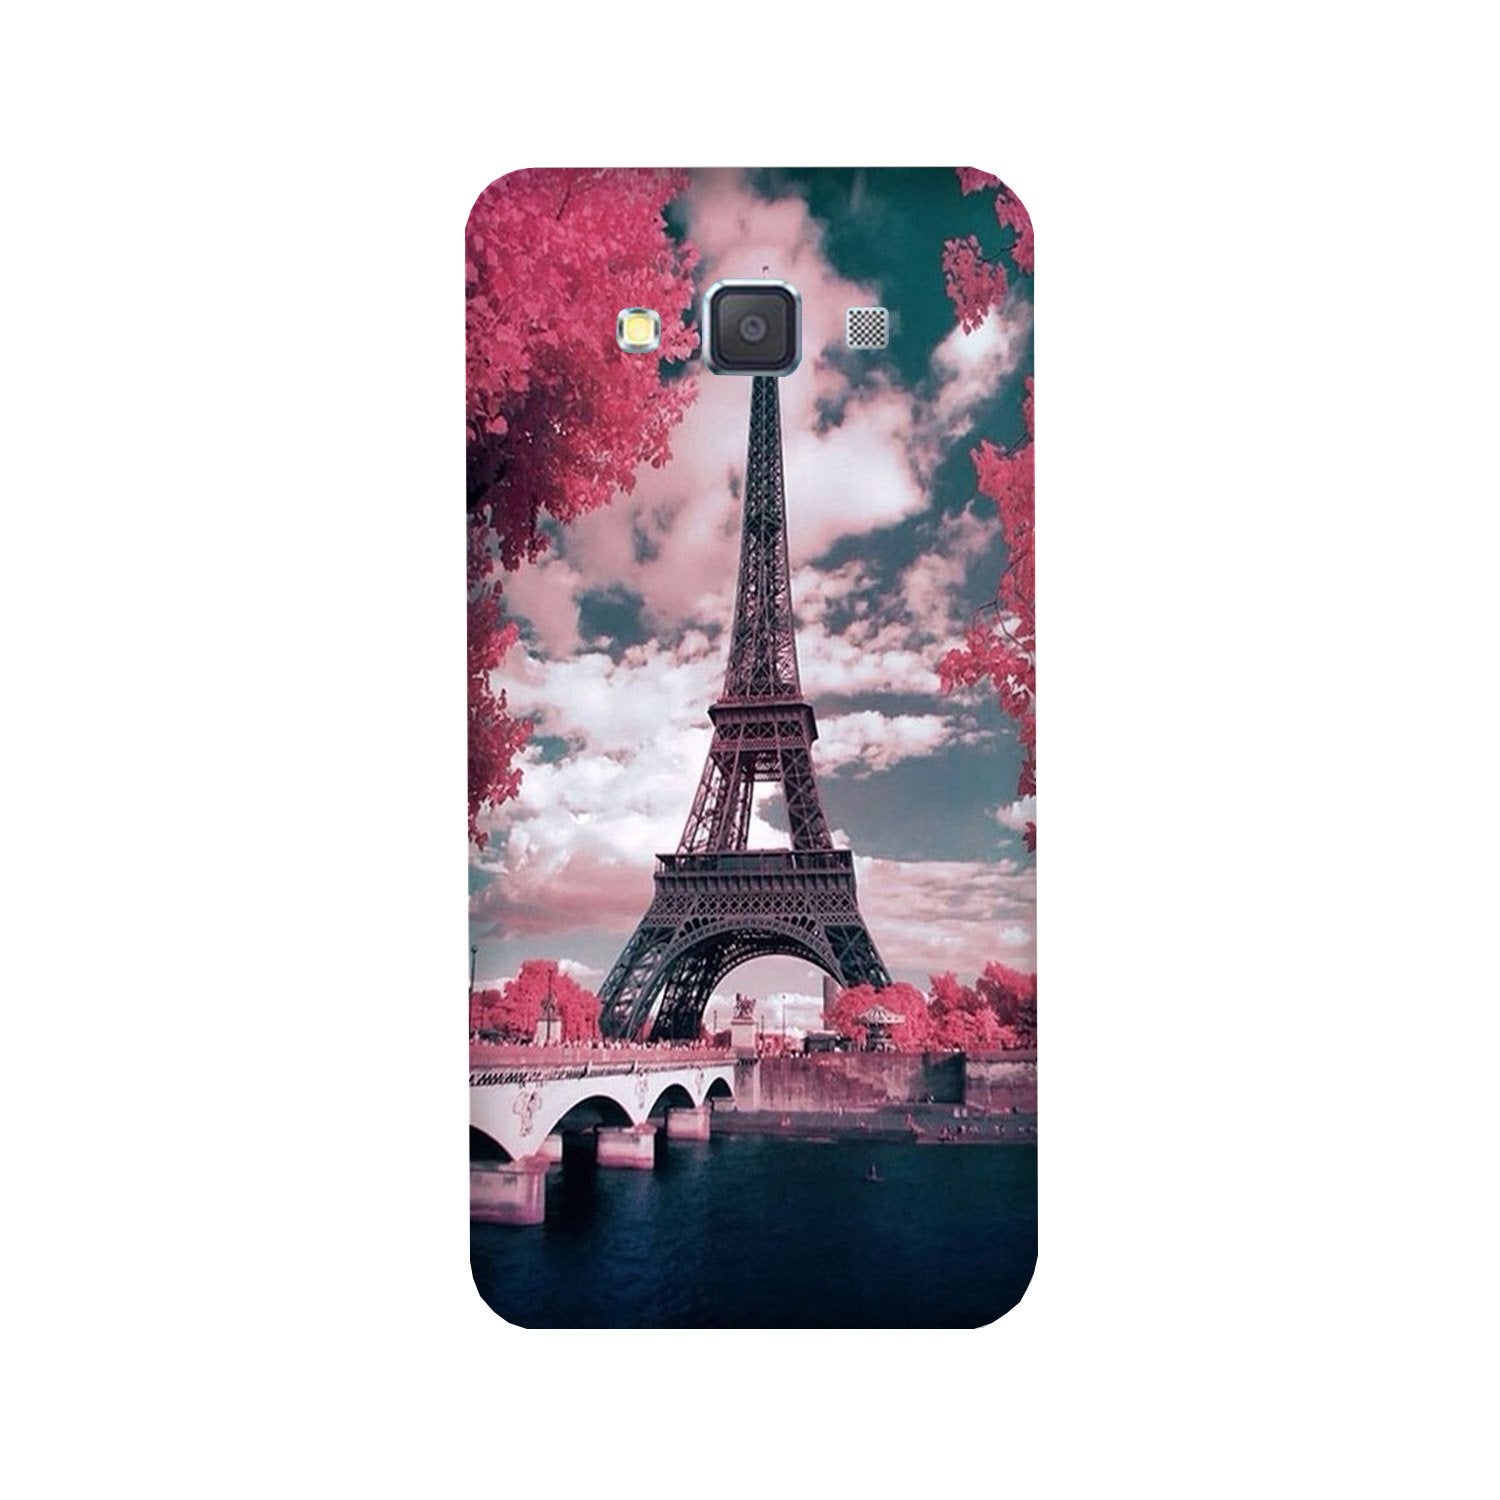 Eiffel Tower Case for Galaxy A3 (2015)  (Design - 101)